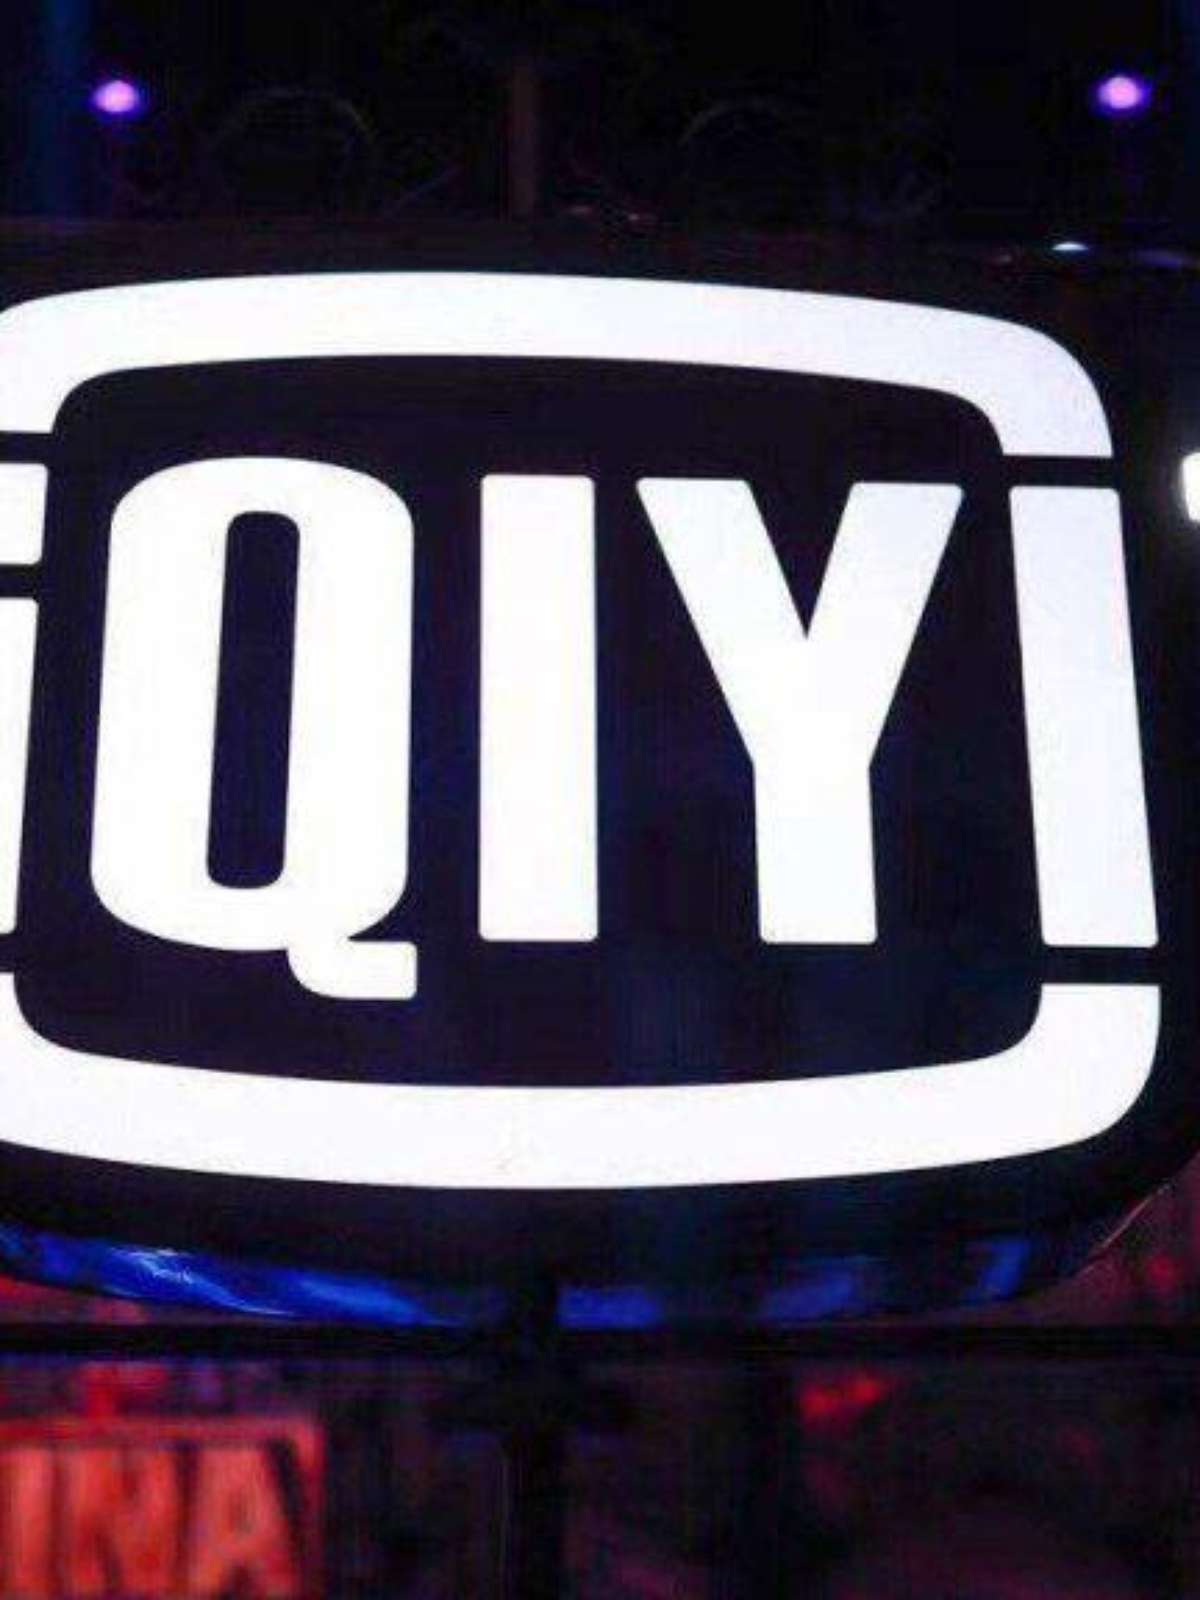 Assista na iQIYI, a principal plataforma de filmes e vídeos online do mundo  – iQIYI